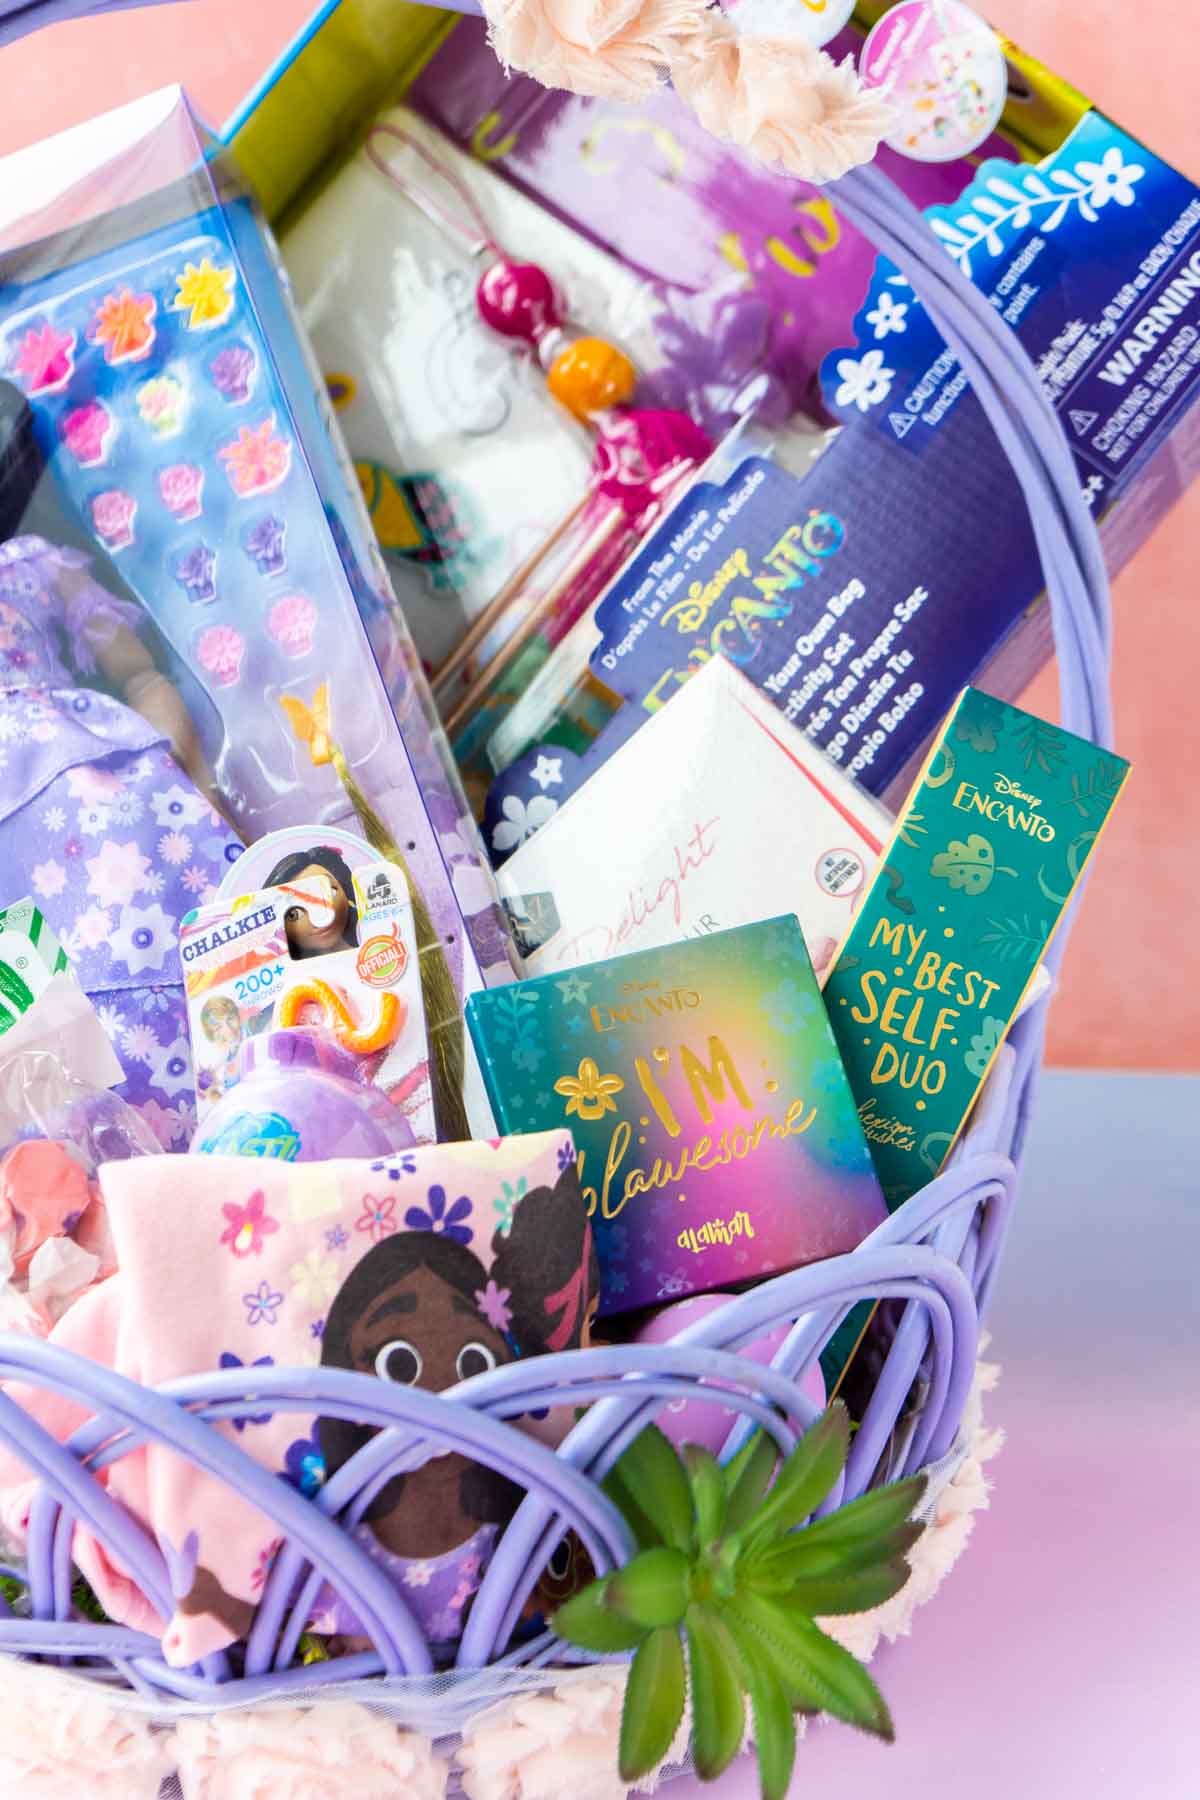 Encanto makeup in an Easter basket